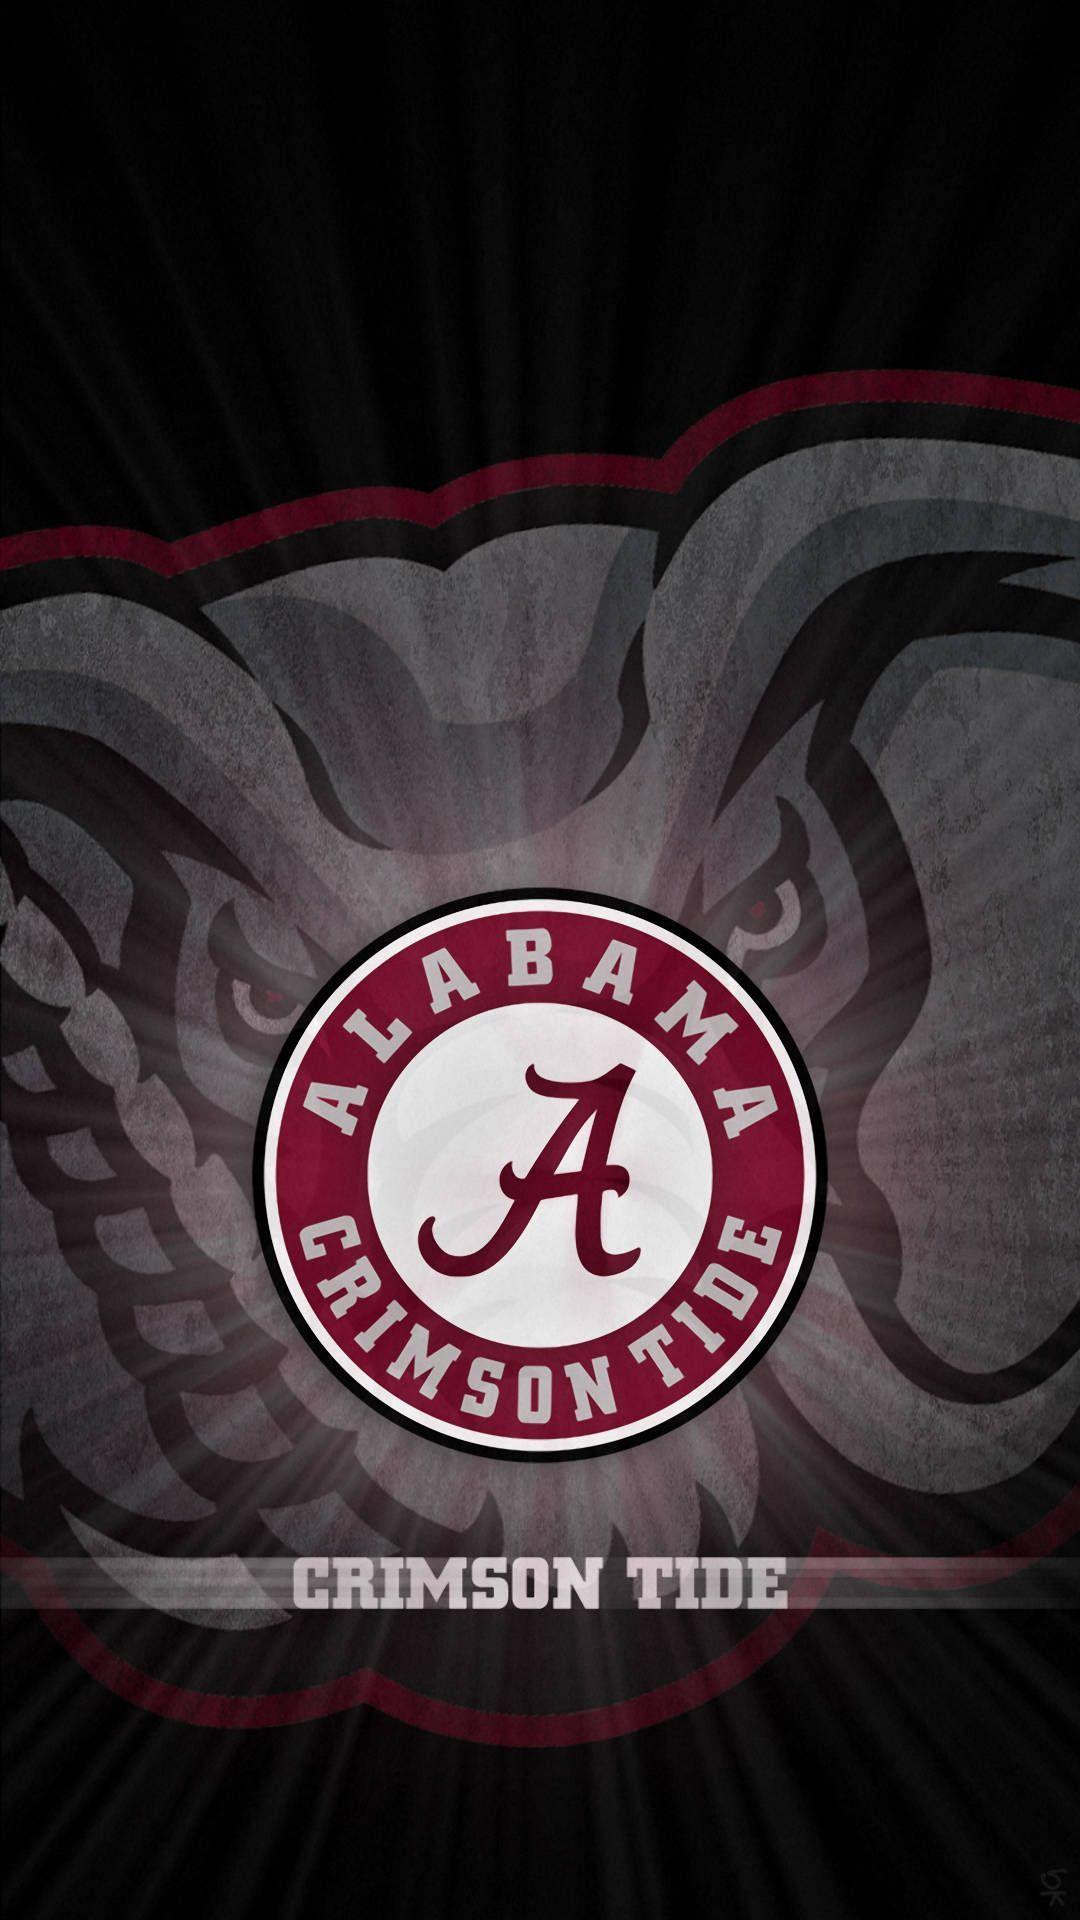 Alabama Football Iphone Wallpapers